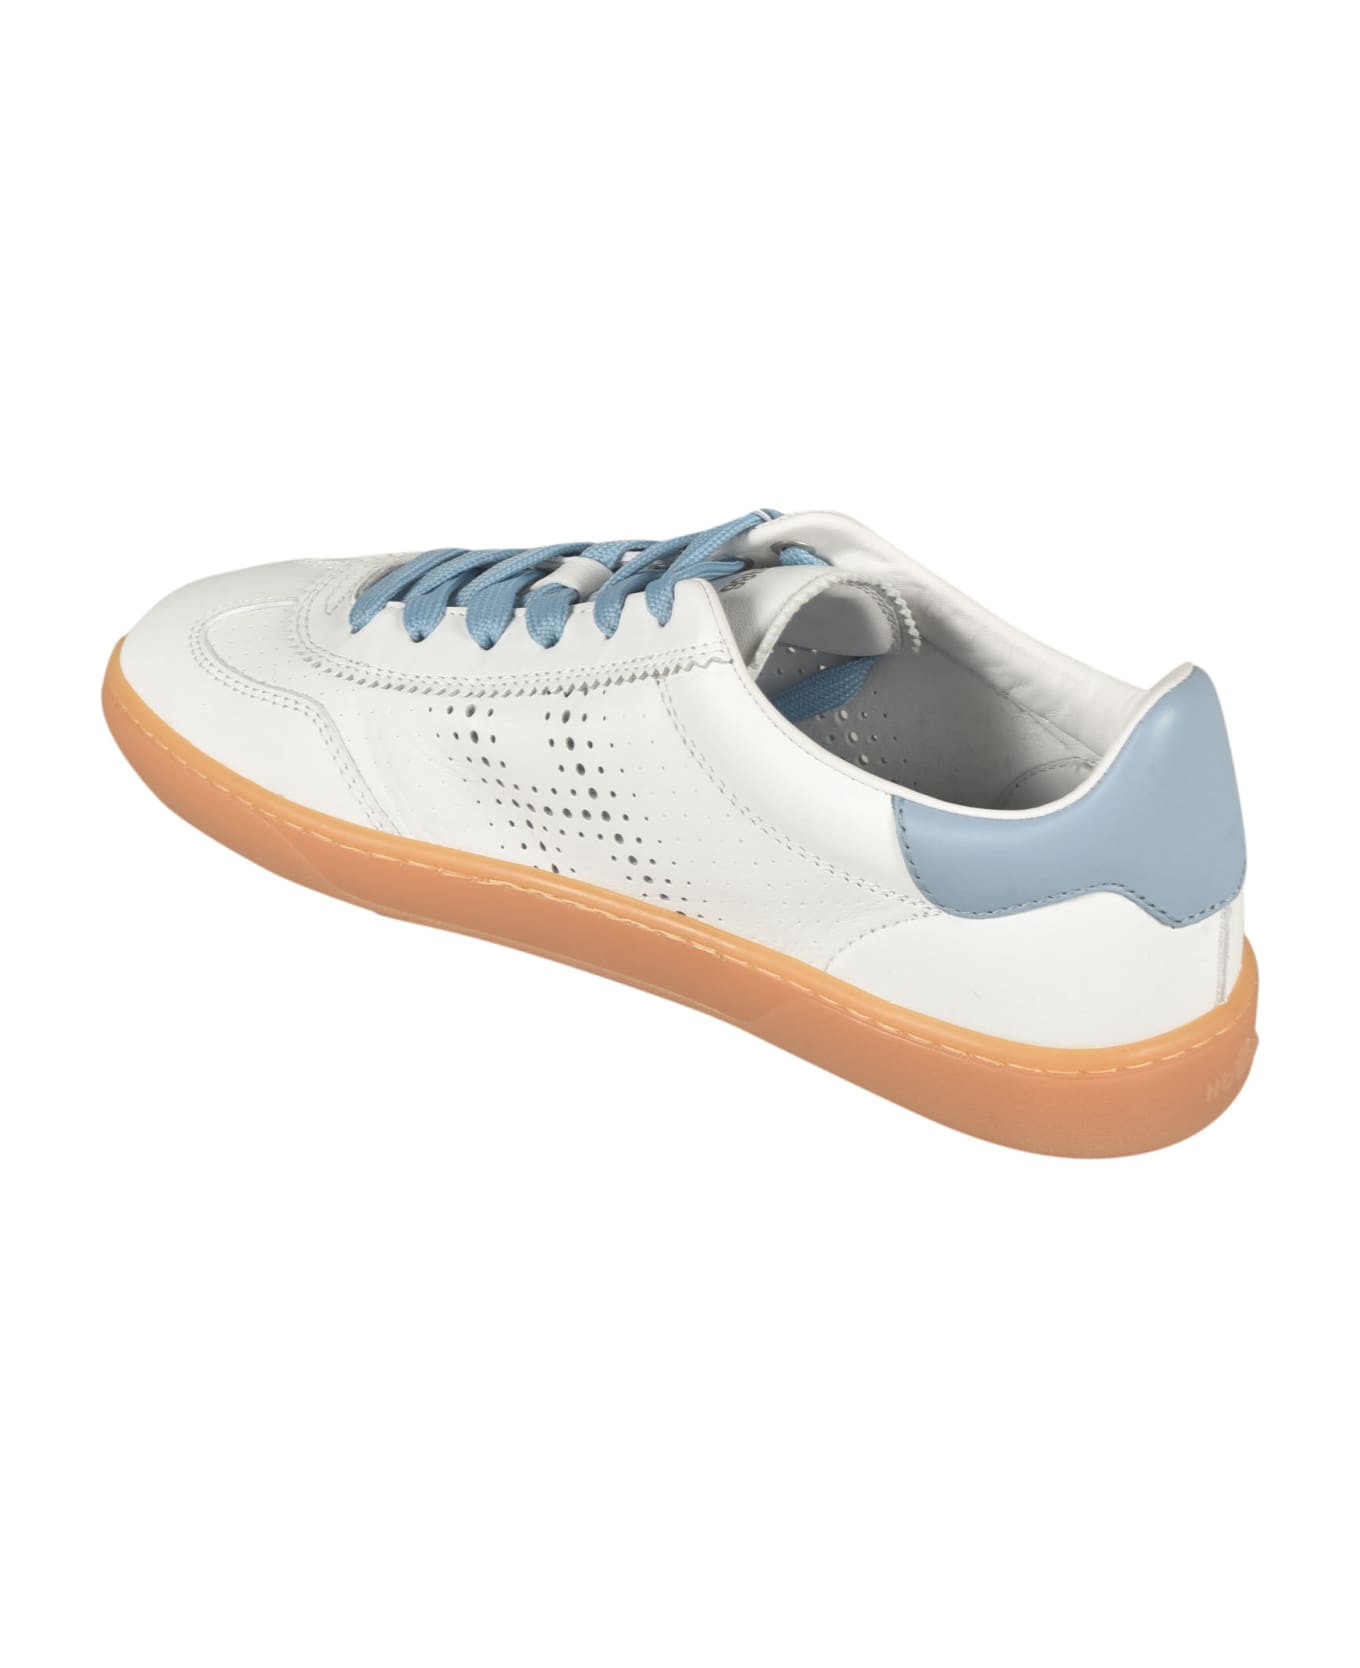 Hogan Perforated Low Sneakers - Sum Bianco + Azzurro スニーカー